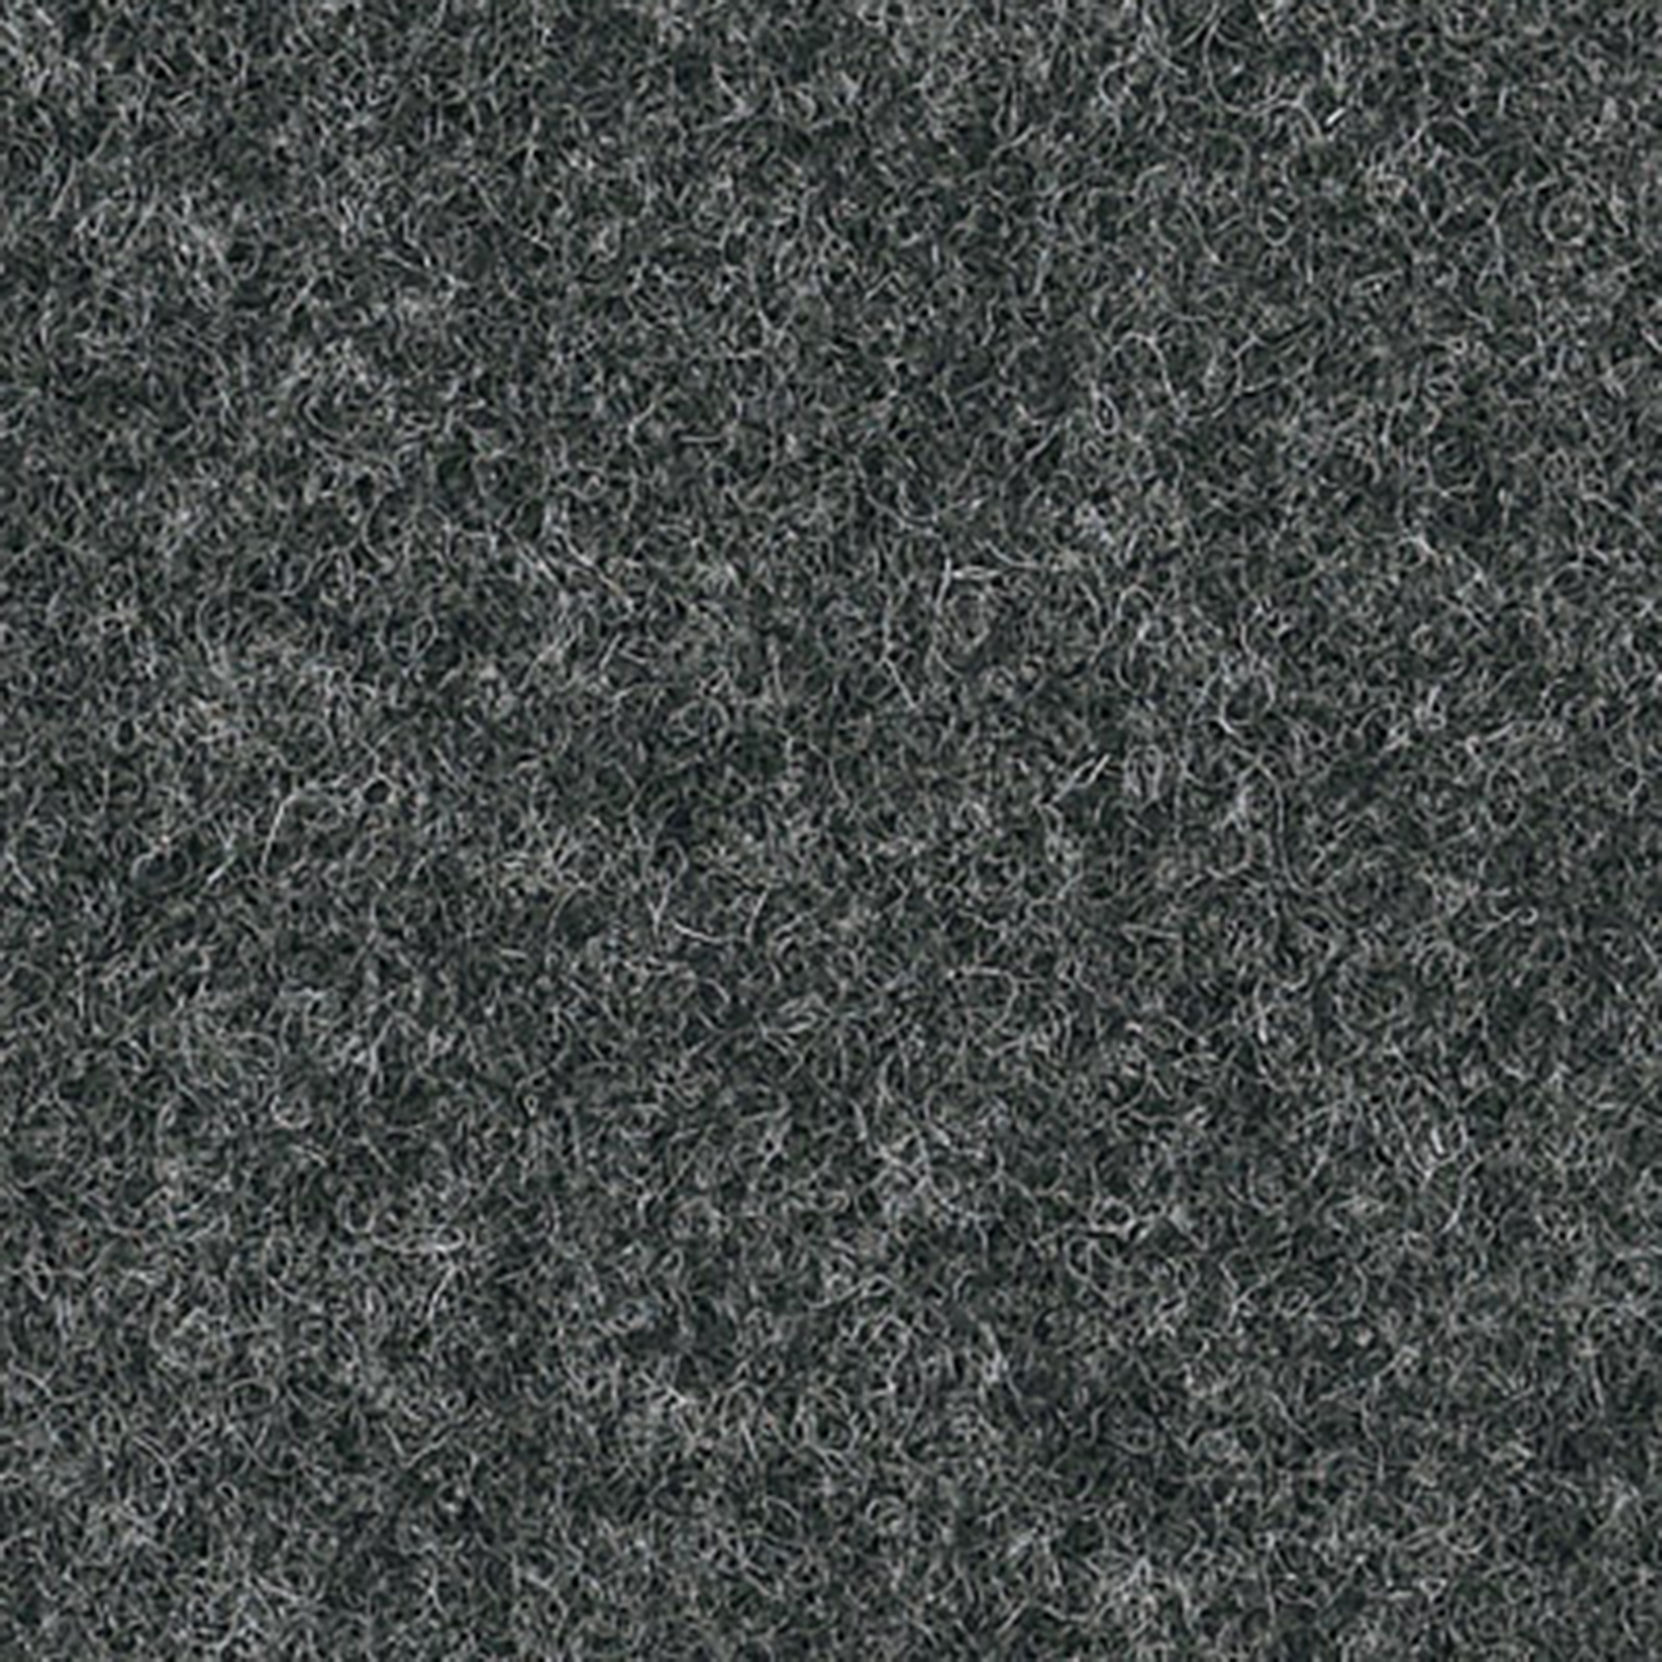 Camira Wool Dark Grey [+$209.00]